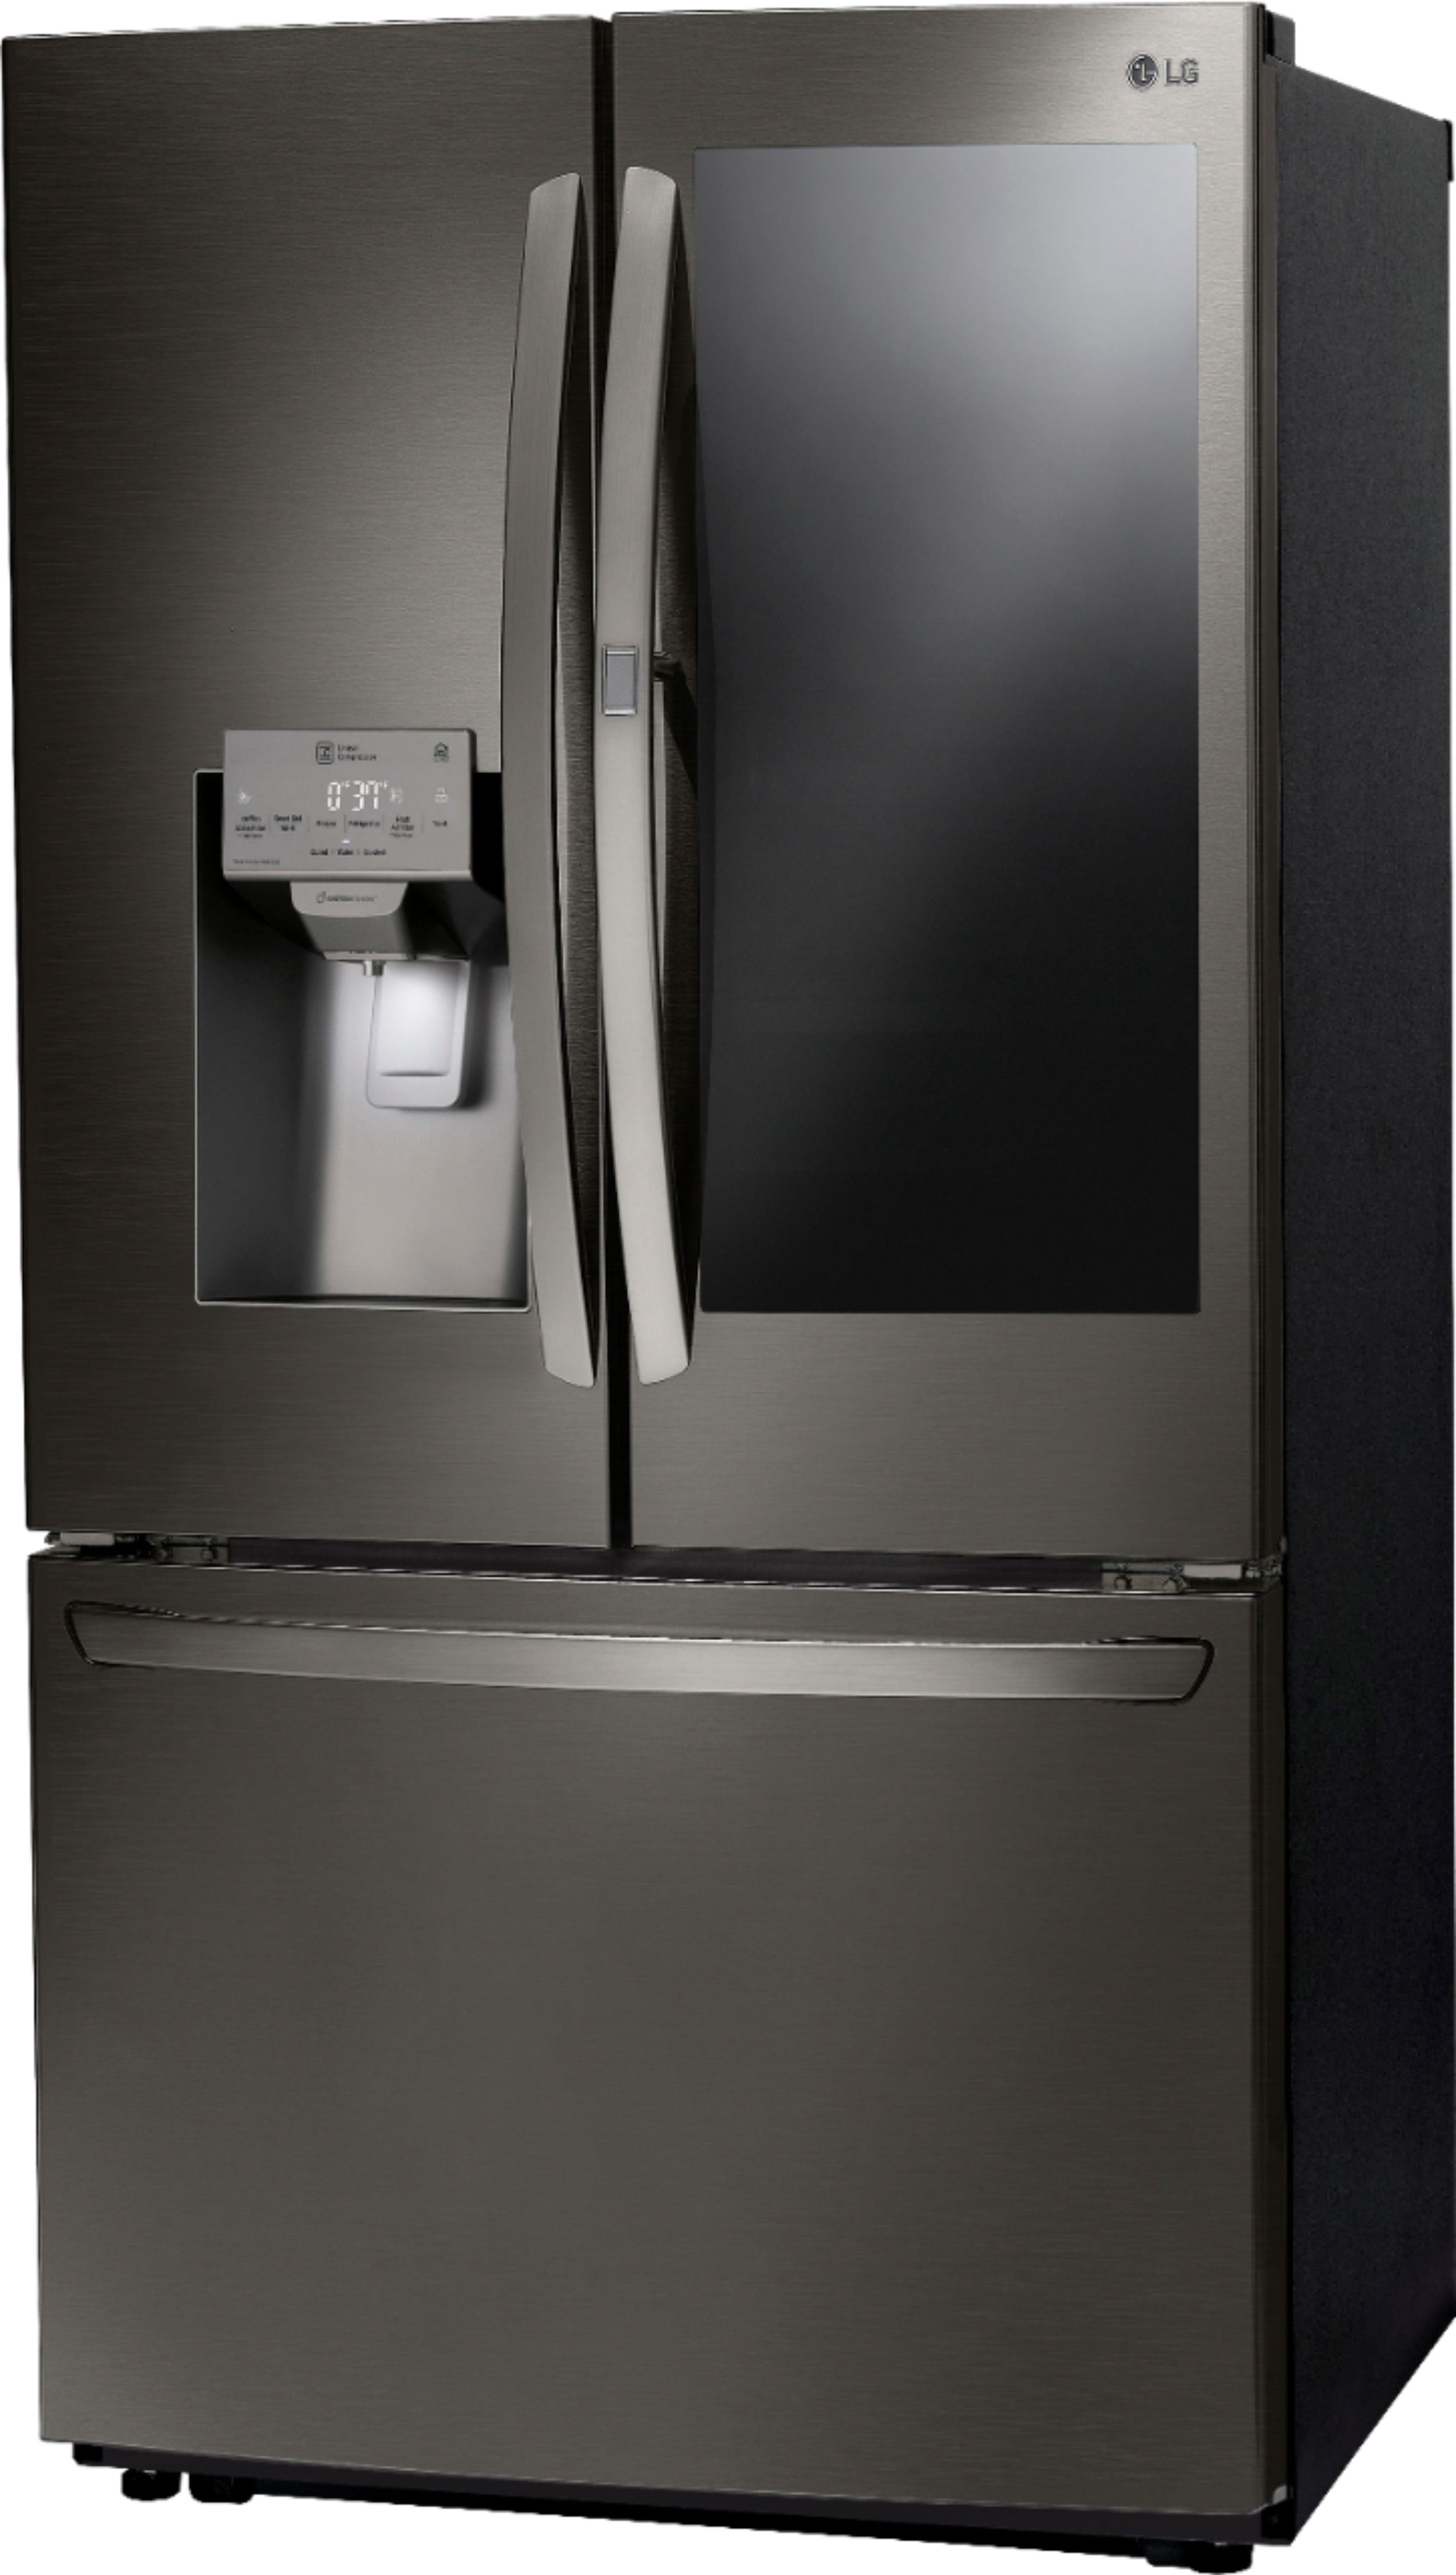 Left View: LG - 21.9 Cu. Ft. French Door-in-Door Counter-Depth Refrigerator - Black stainless steel